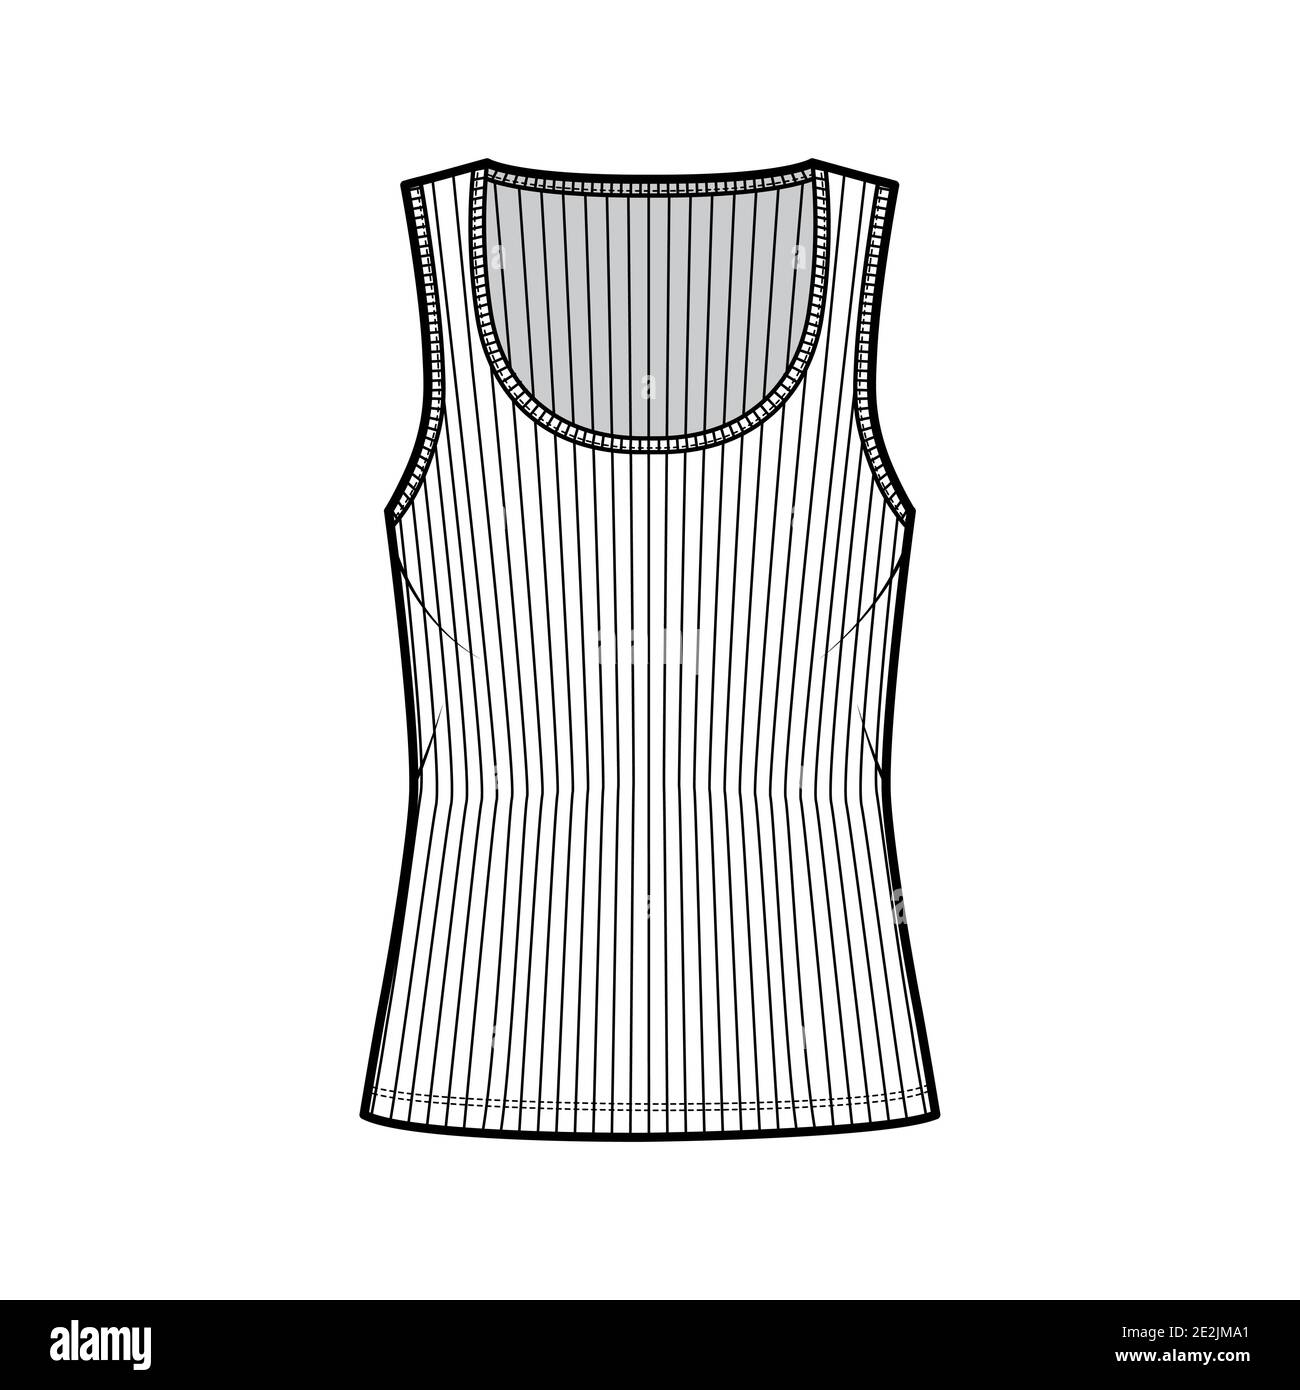 Camiseta de algodón acanalada ilustración técnica de moda con cuello ancho, punto de relajado, longitud túnica. Sin pinzas camisola ropa plantilla frontal blanco color. Mujer hombres unisex camisa top CAD